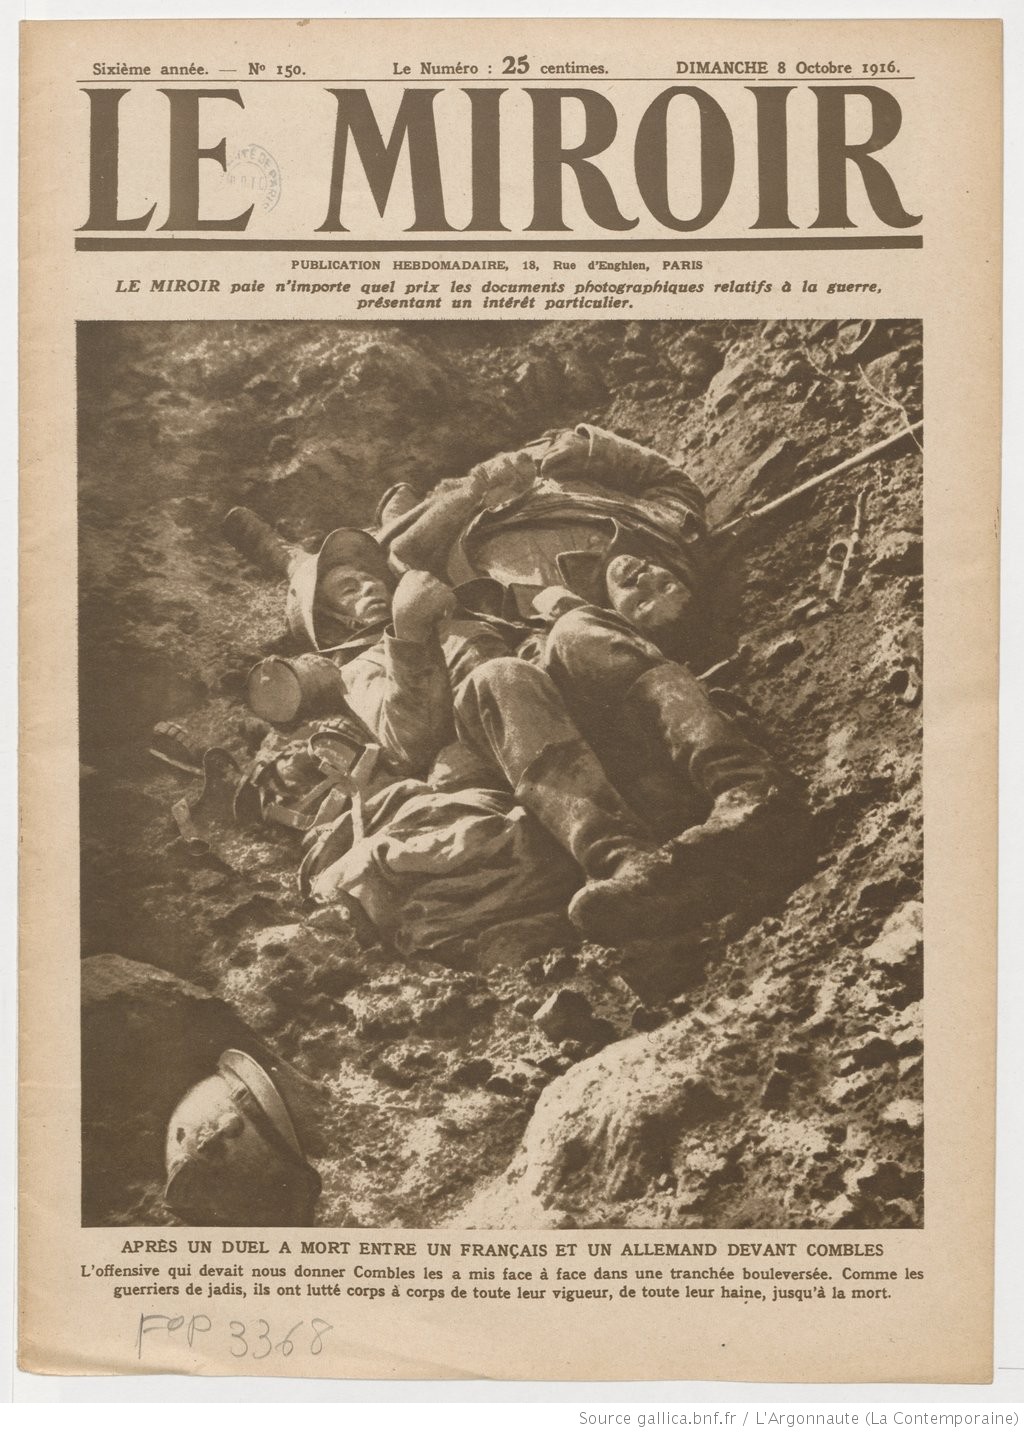 2_Żołnierze francuscy i niemieccy po śmiertelnej walce w okopach pod Combles, okładka pisma „Le Miroir”, 1916, źródło_ gallica.bnf.fr_Bibliothèque nationale de France